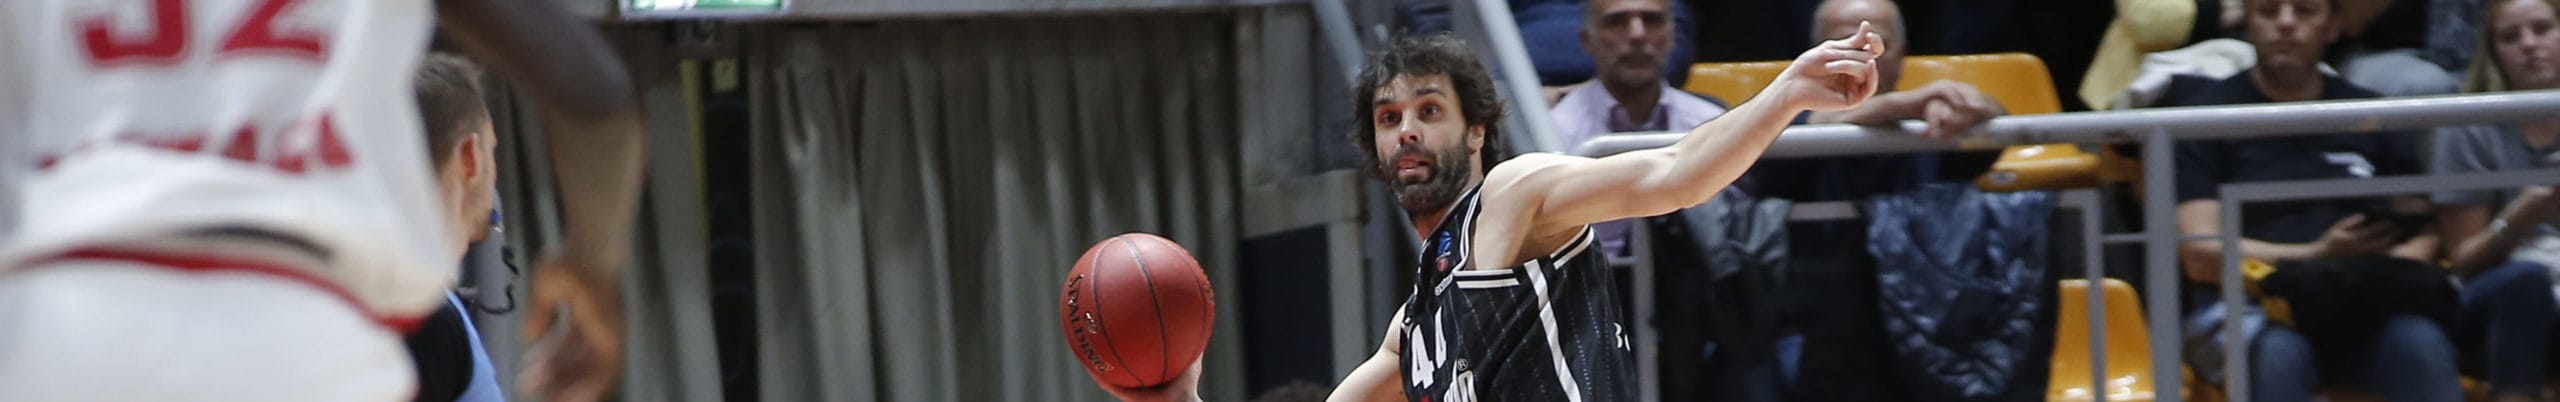 Virtus Bologna-Milano, nello scontro tra le due big della pallacanestro italiana spicca il duello Teodosic-Rodriguez